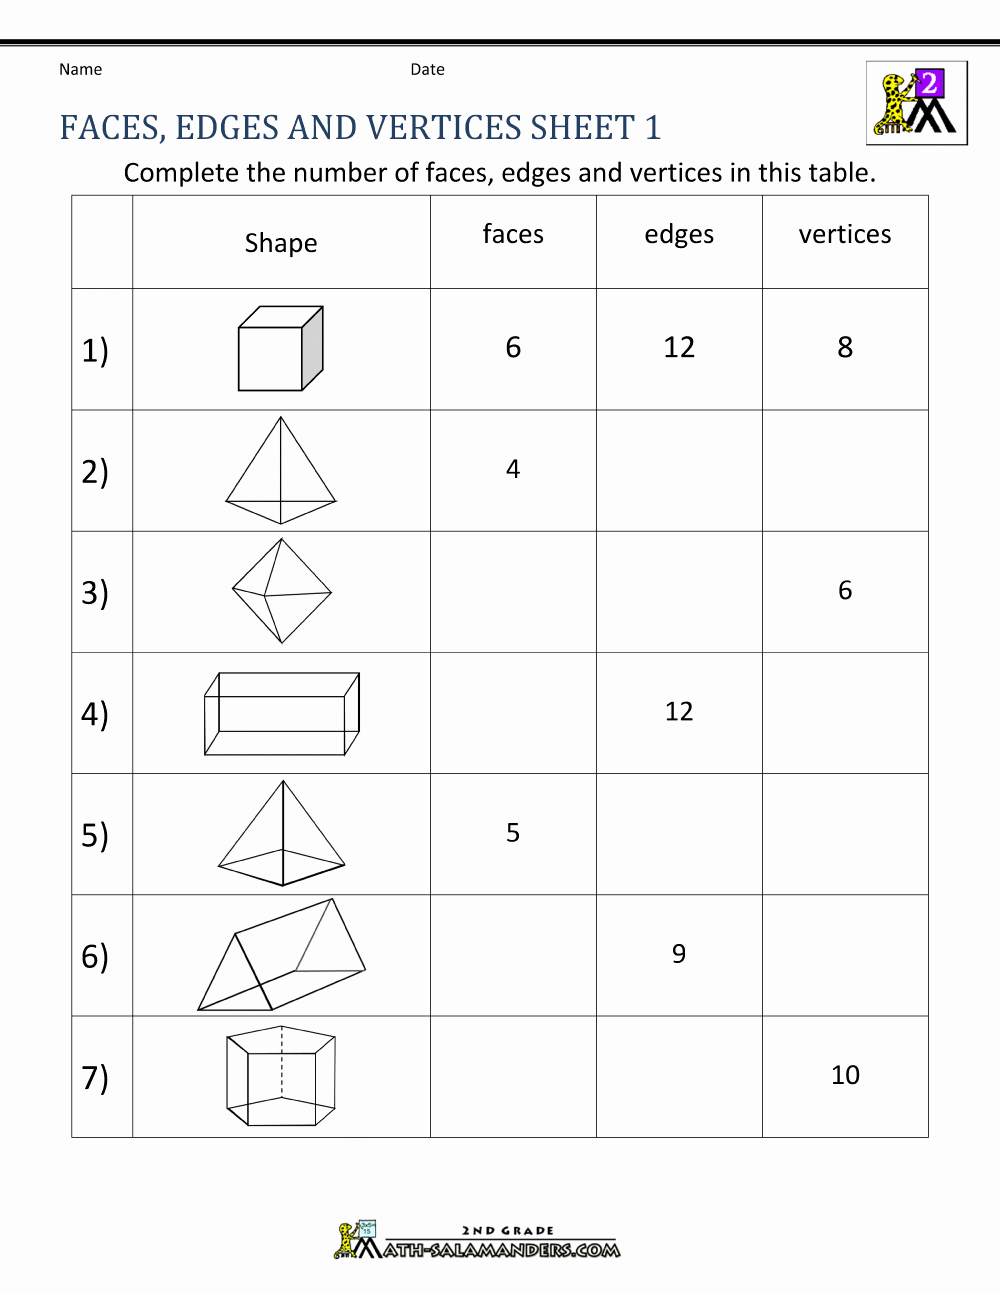 3d Shapes Worksheets 2nd Grade Elegant 3d Shapes Worksheets 2nd Grade